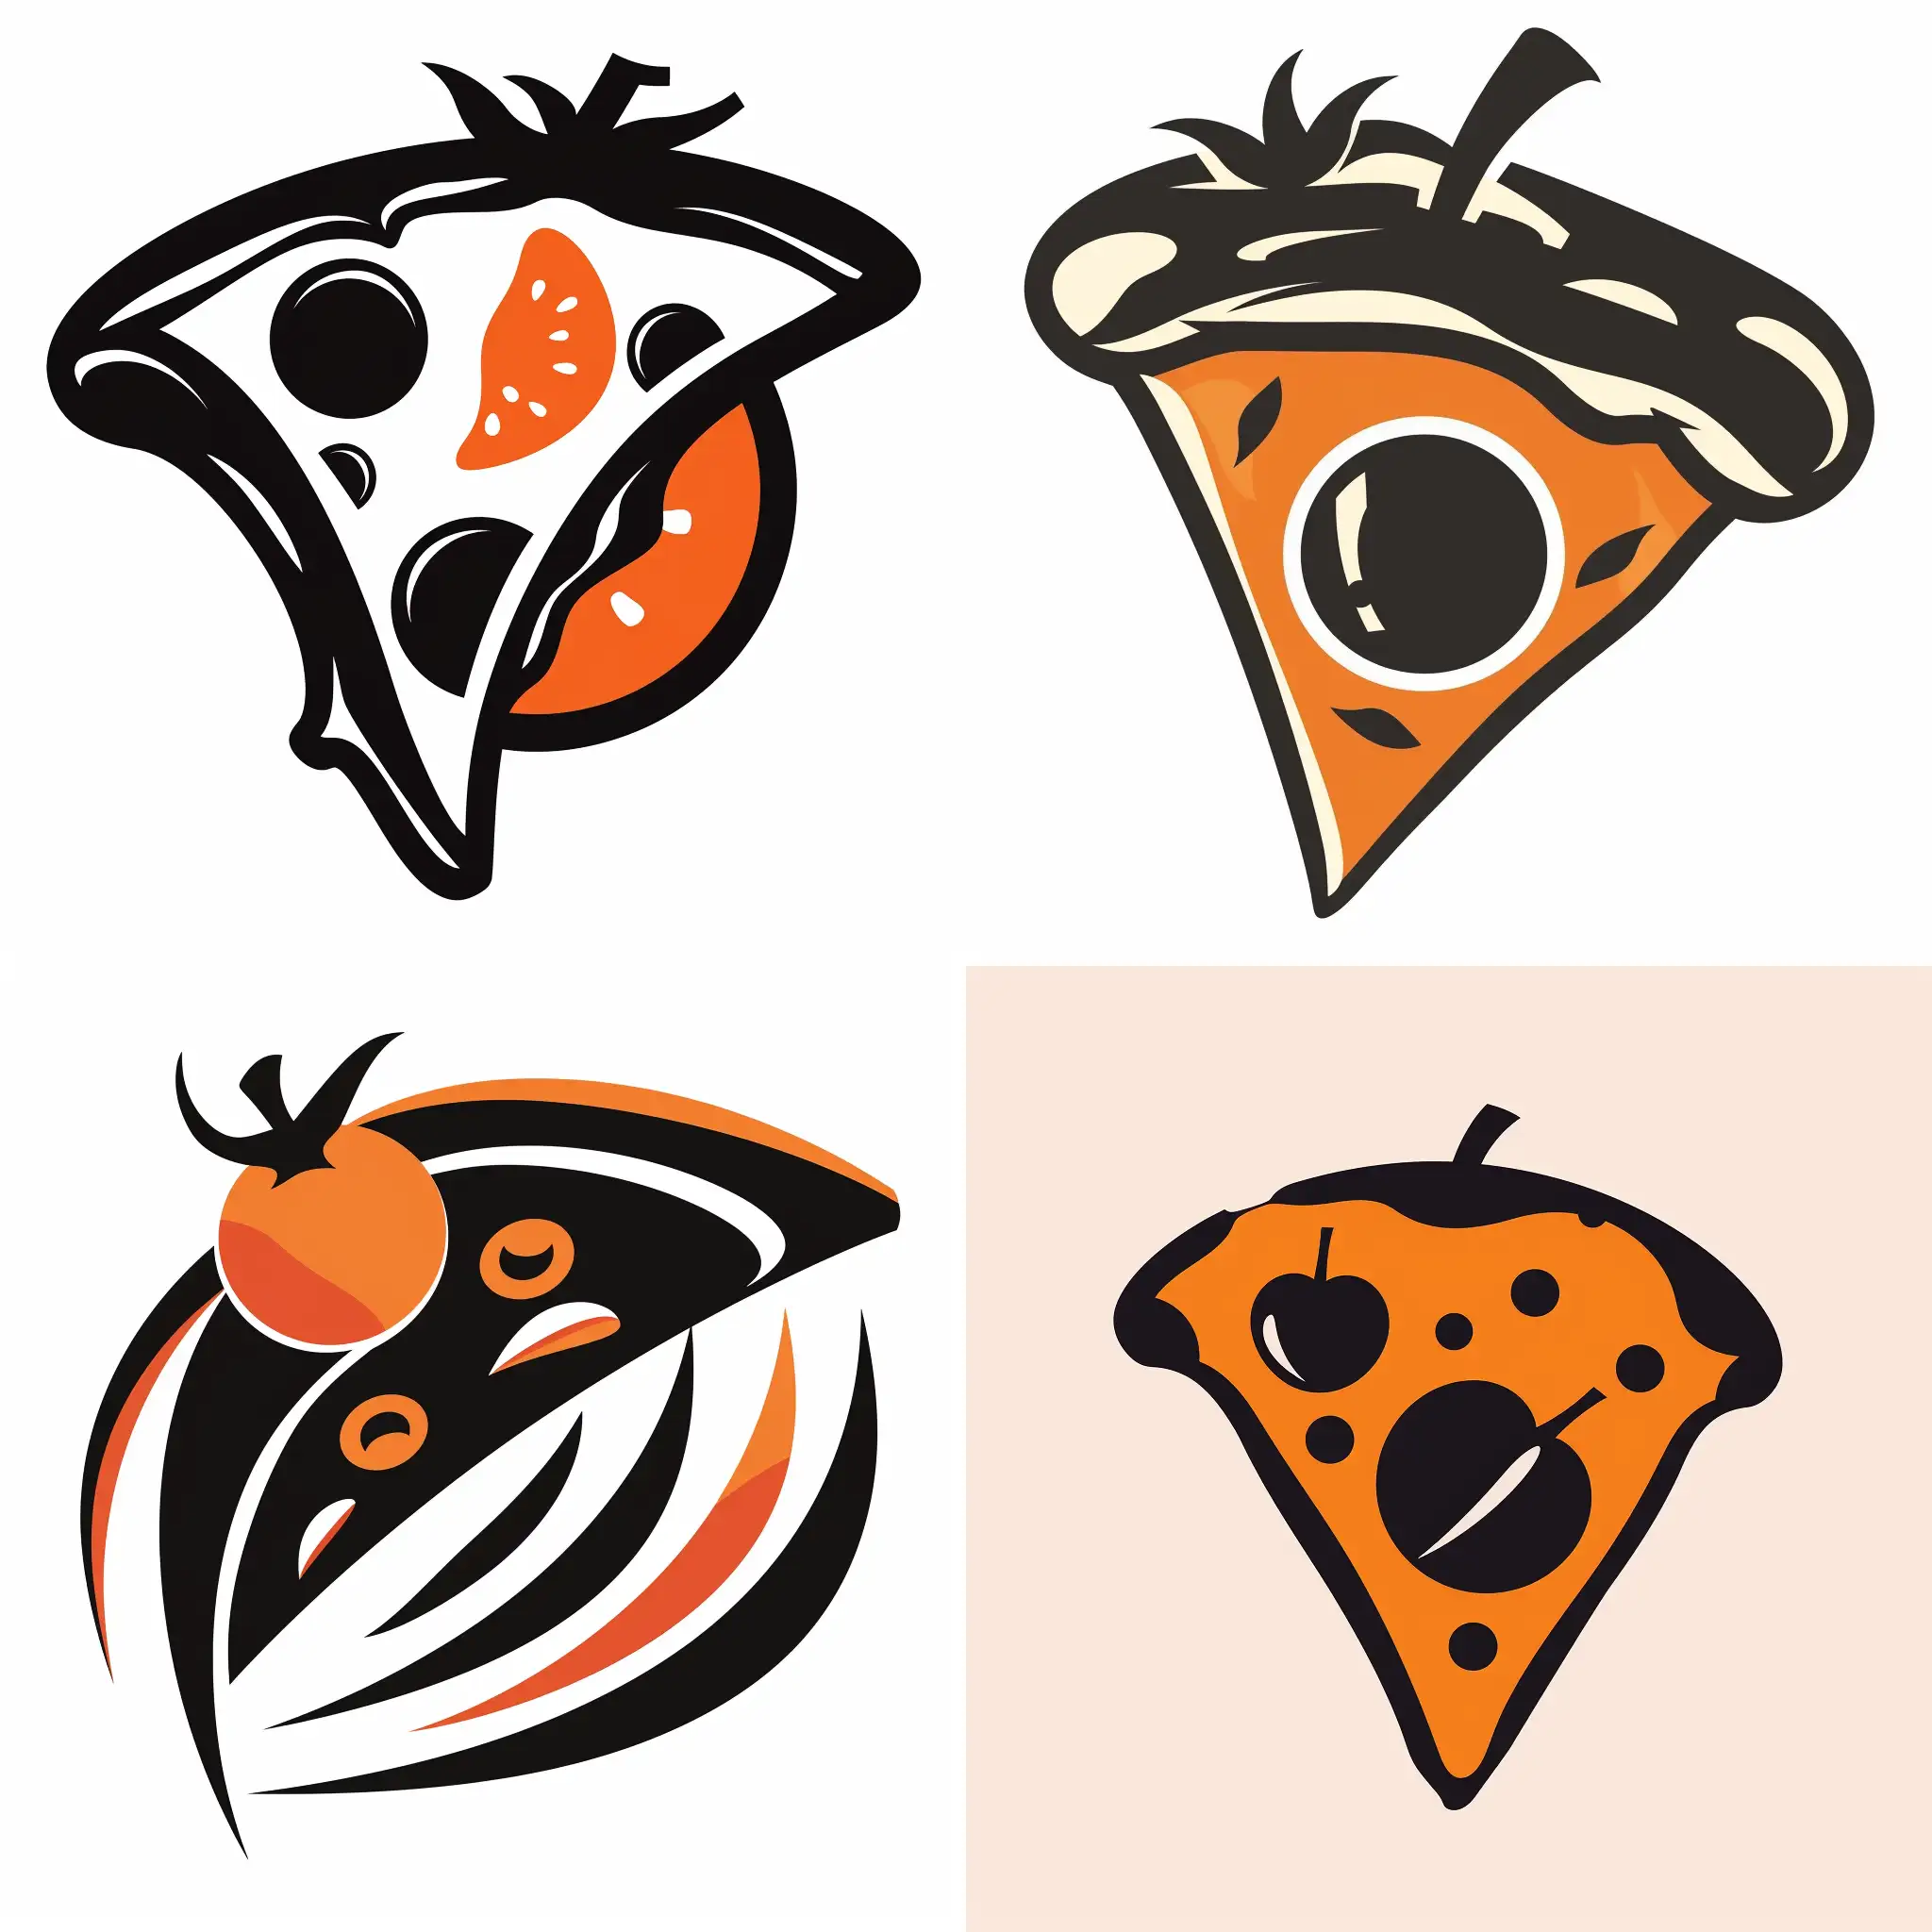 یه لوگوی پیتزا باتم سیاه ونارنجی